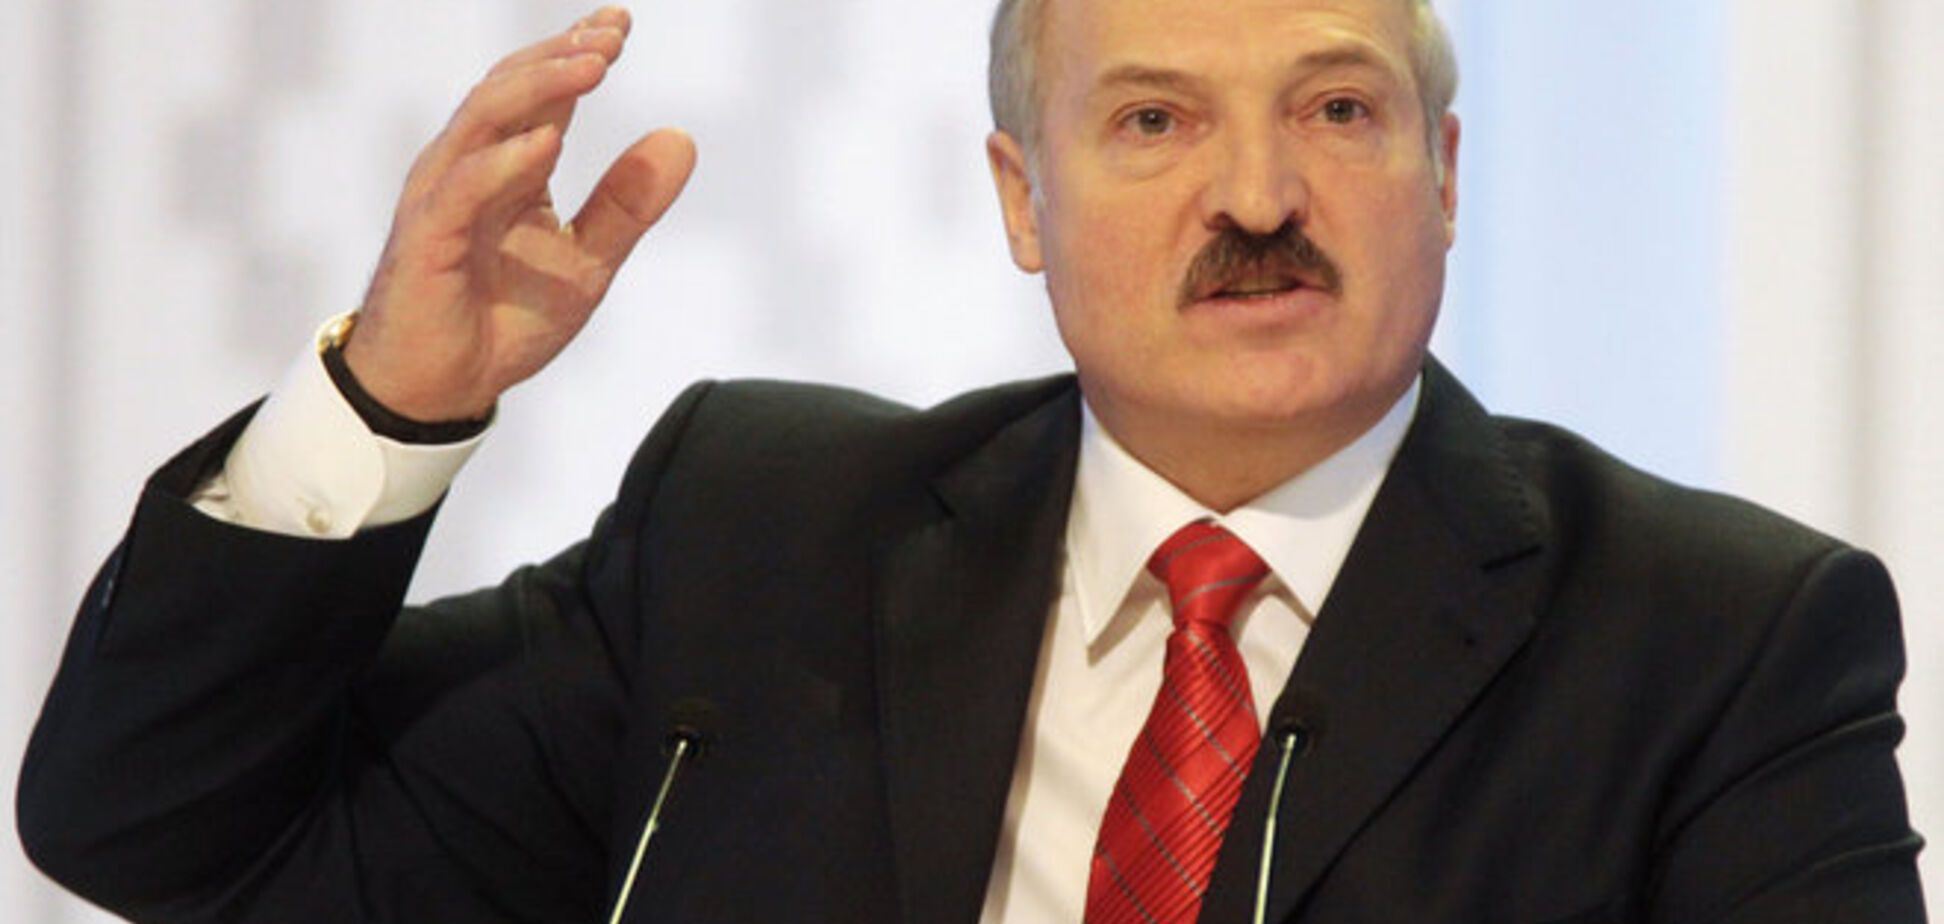 Лукашенко наказав своїм спецслужбам знайти пранкери Вована і відправити його 'на корм' - ЗМІ